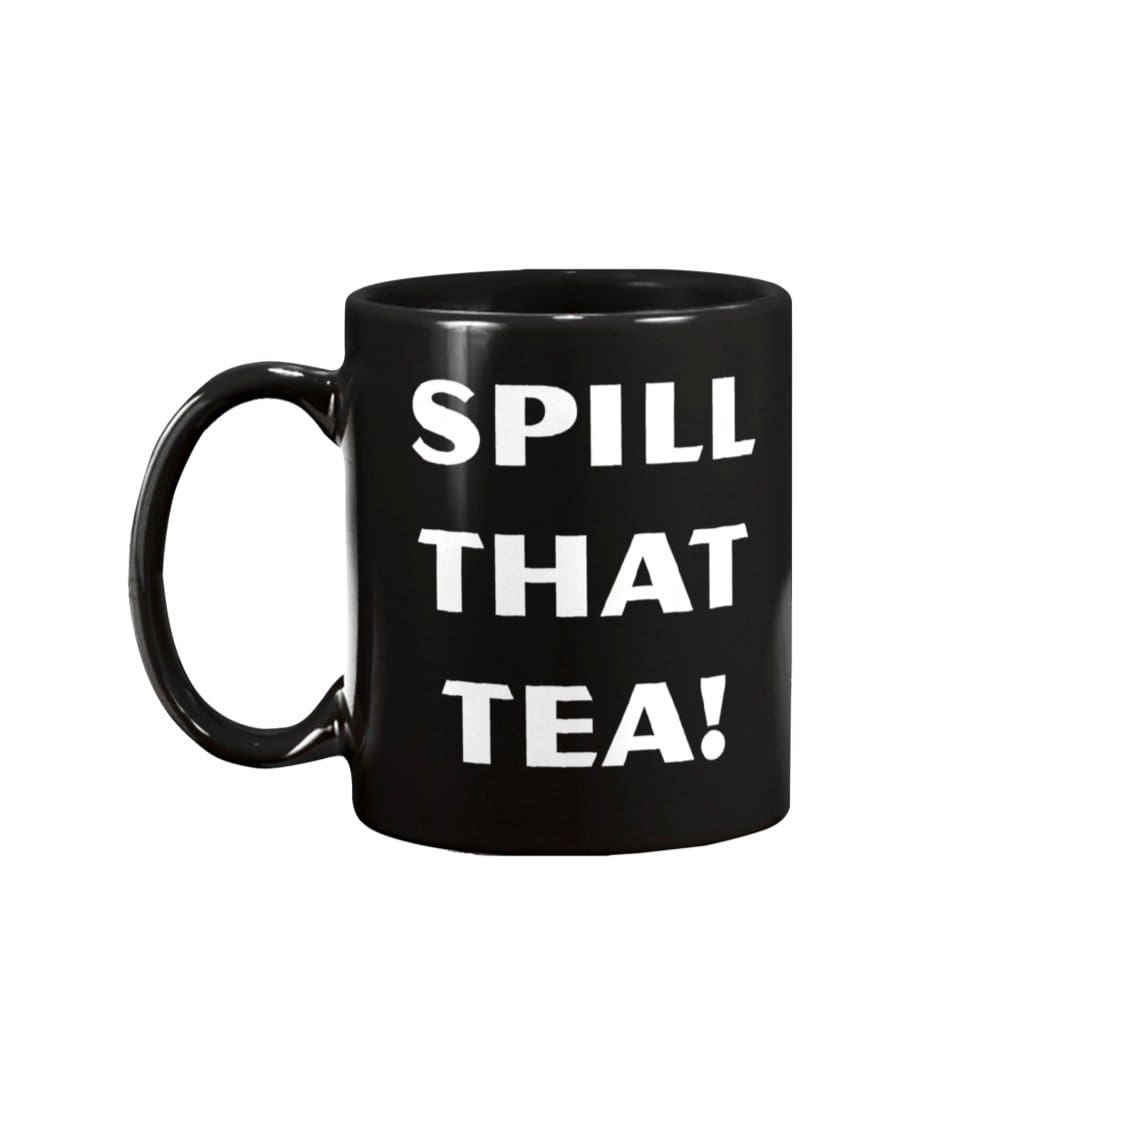 Spill That Tea! 15oz Coffee Mug - Black / 15OZ - Mugs